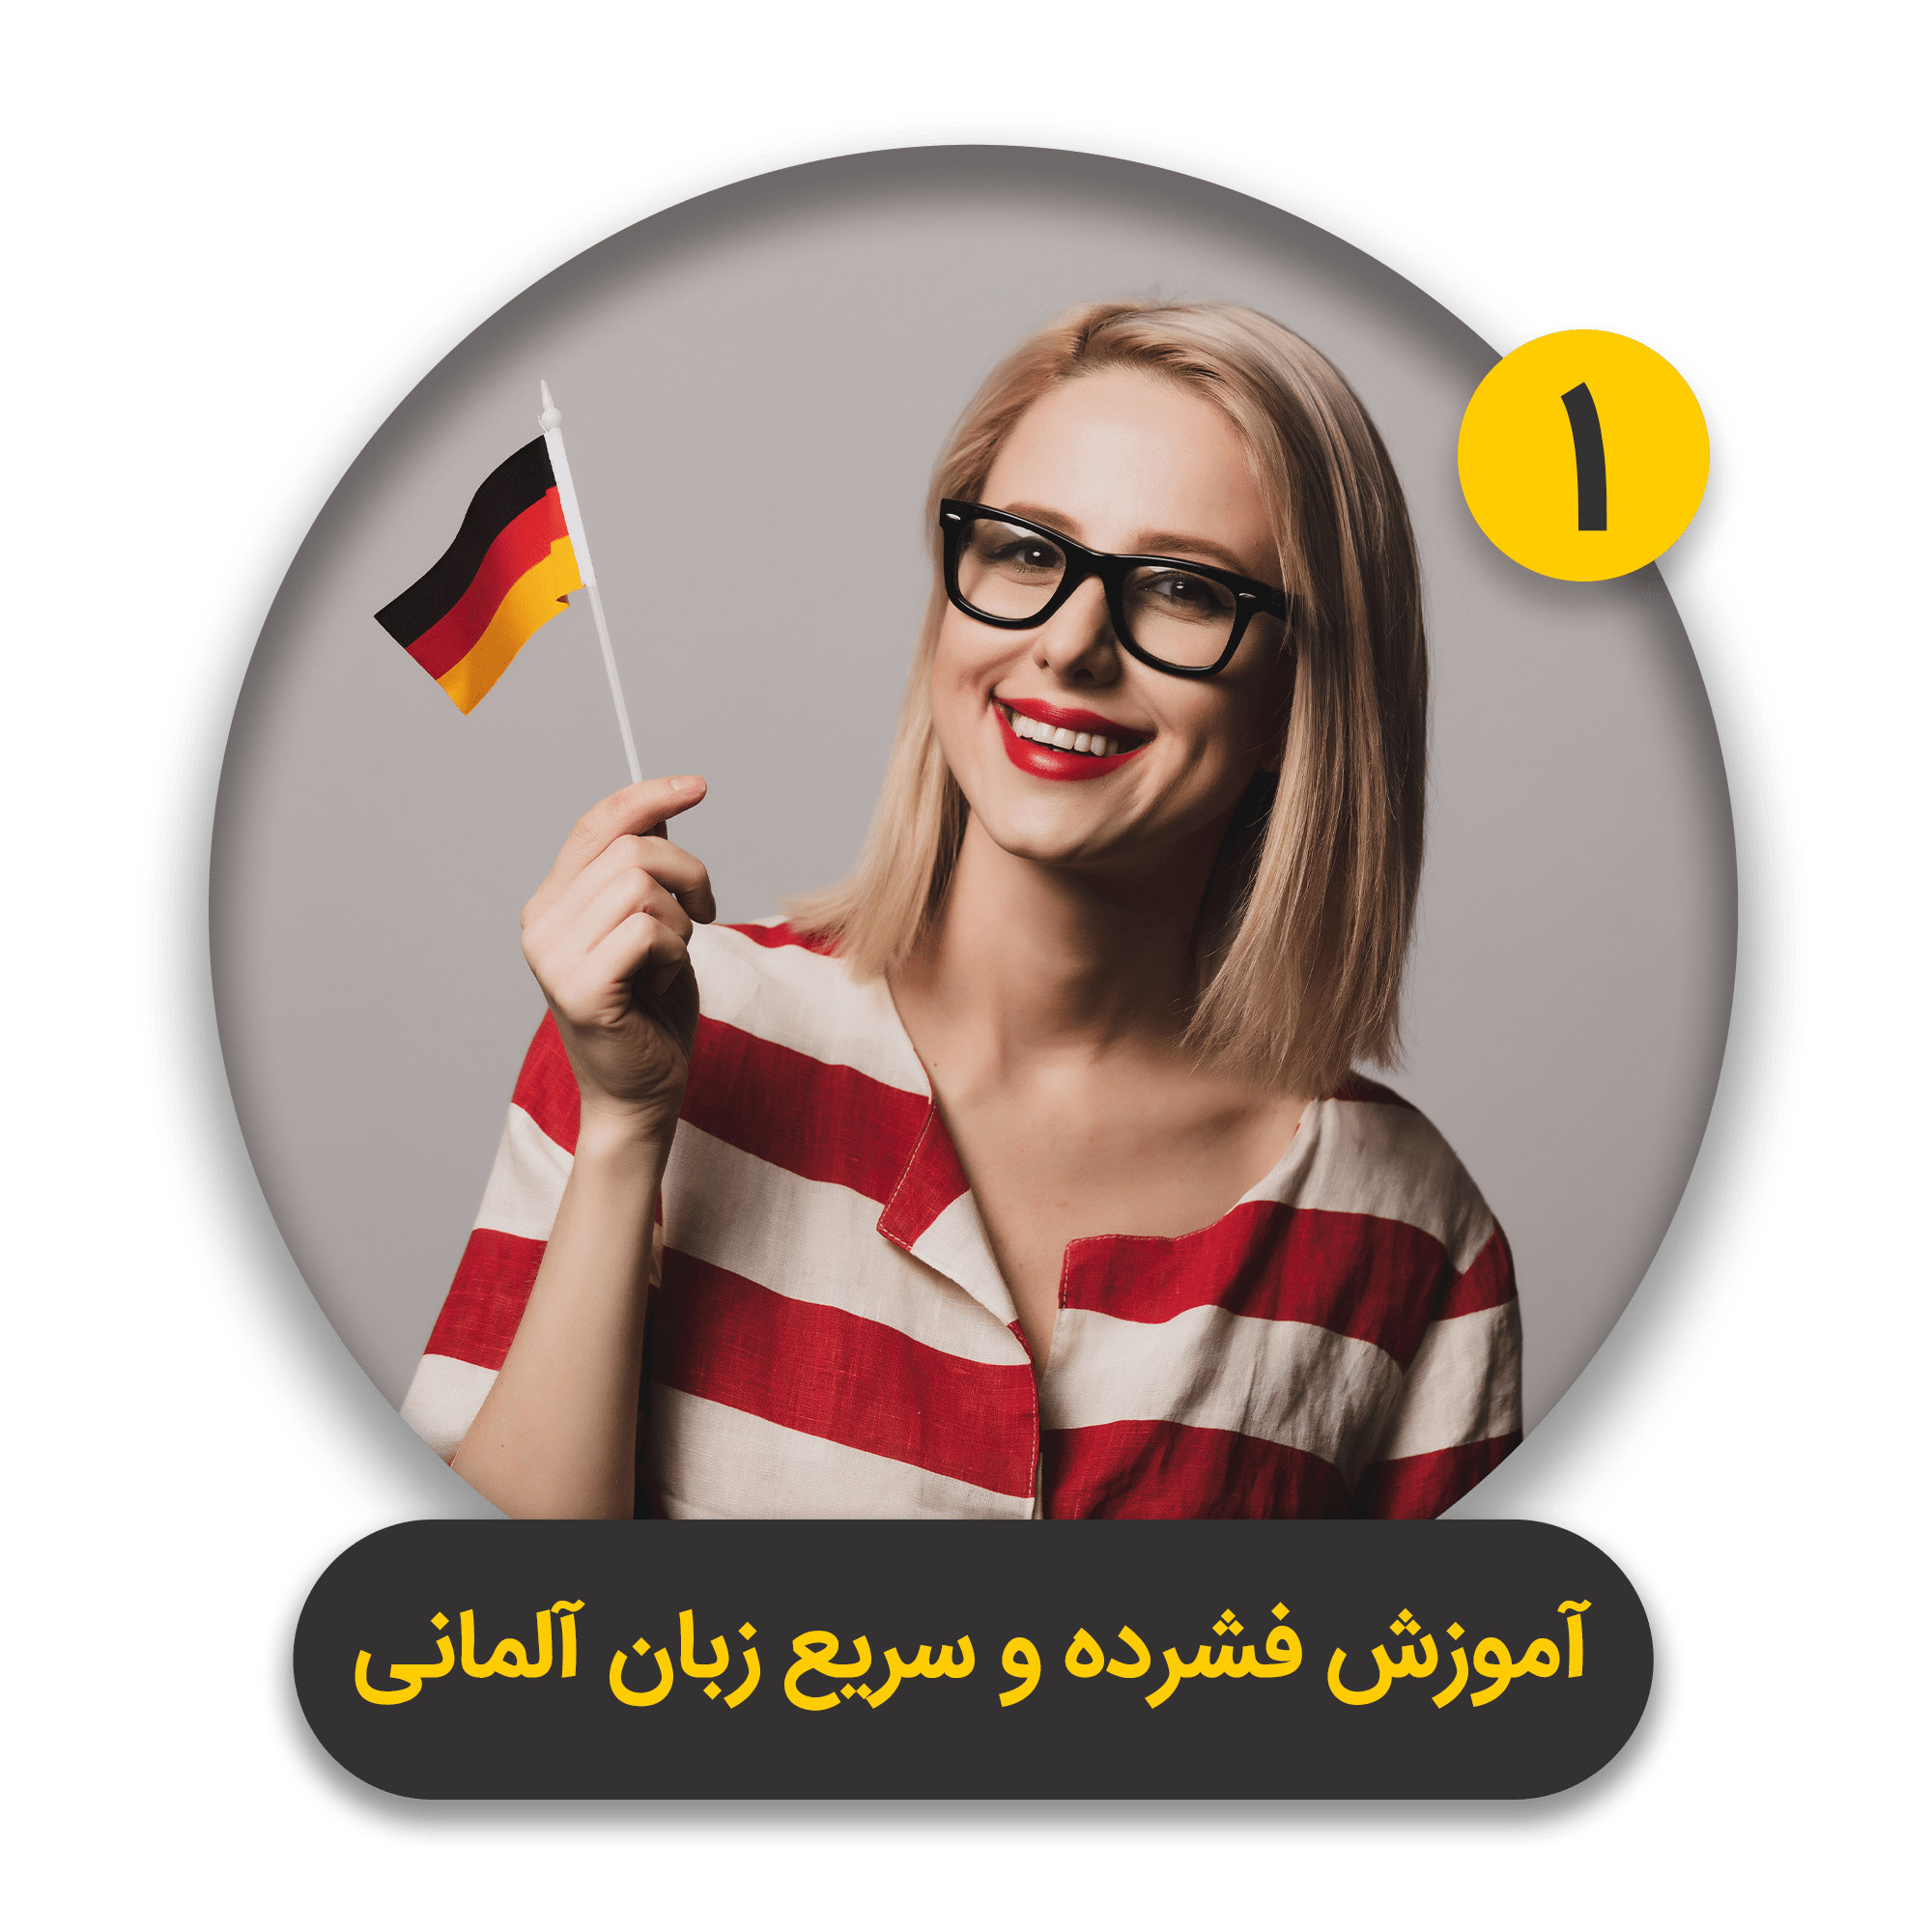 آموزش فشرده و سریع زبان آلمانی - 1-min